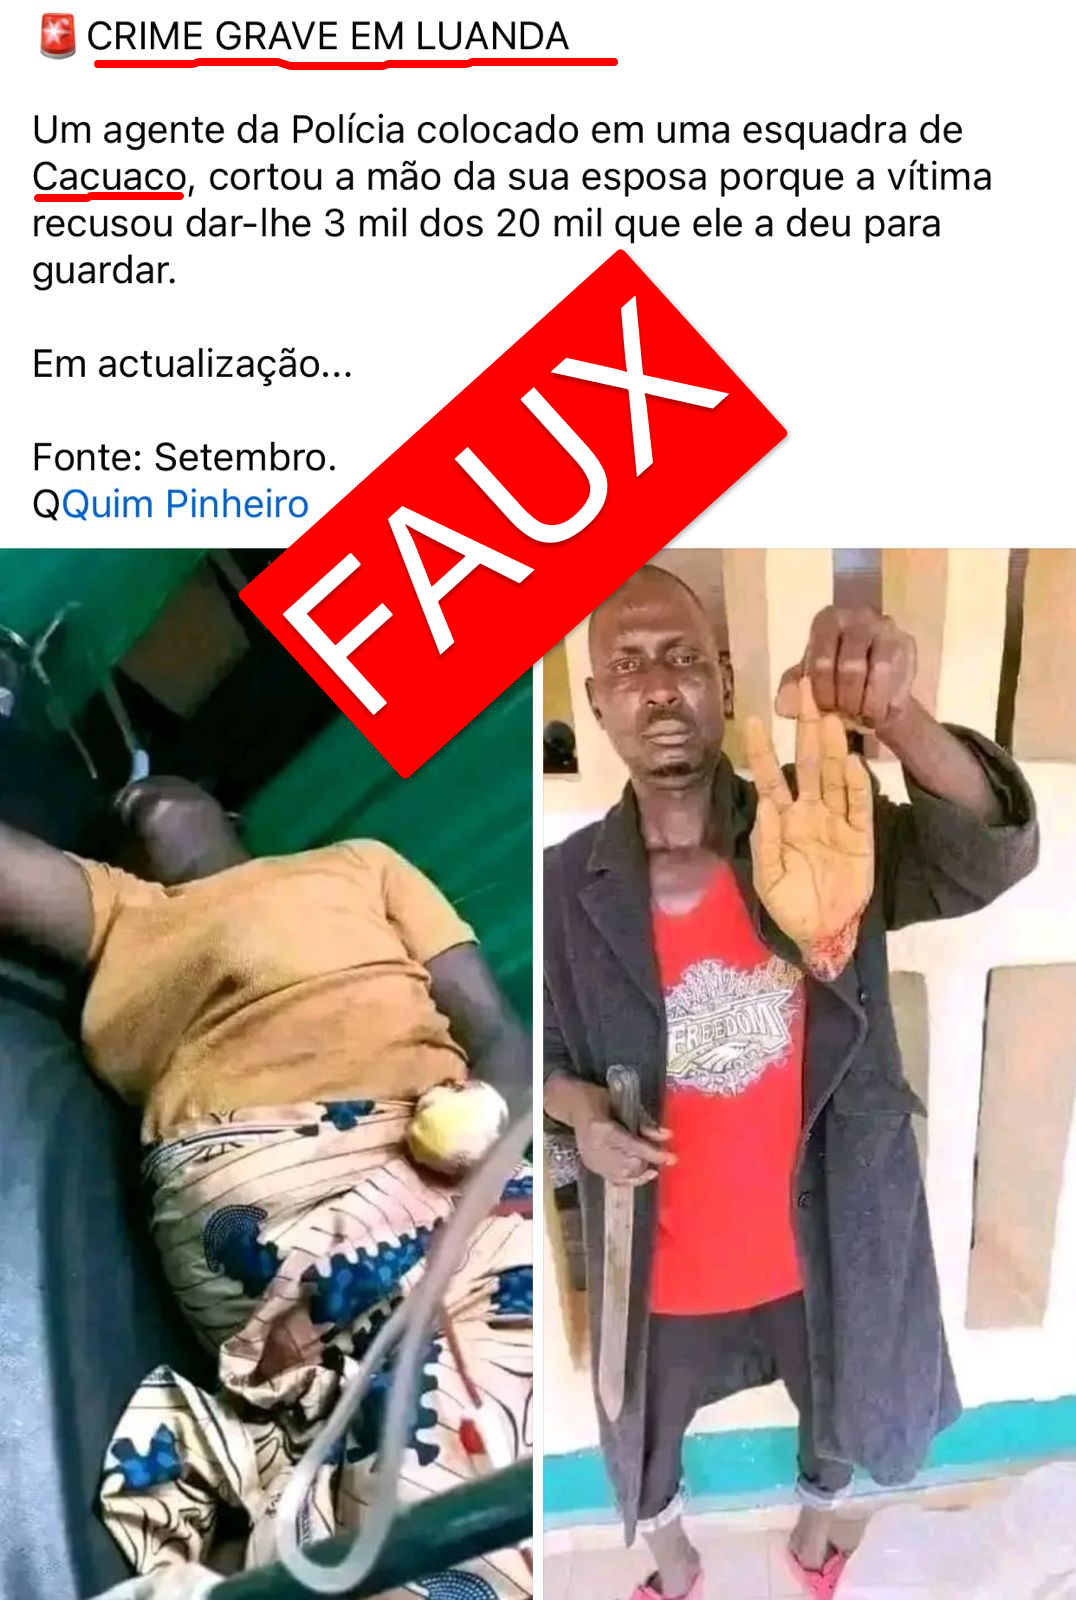 Côte d’Ivoire-AIP-Fact Checking/ FAUX, cette scène montrant la main sectionnée d’une femme ne s’est pas produite en Angola, mais au Nigeria